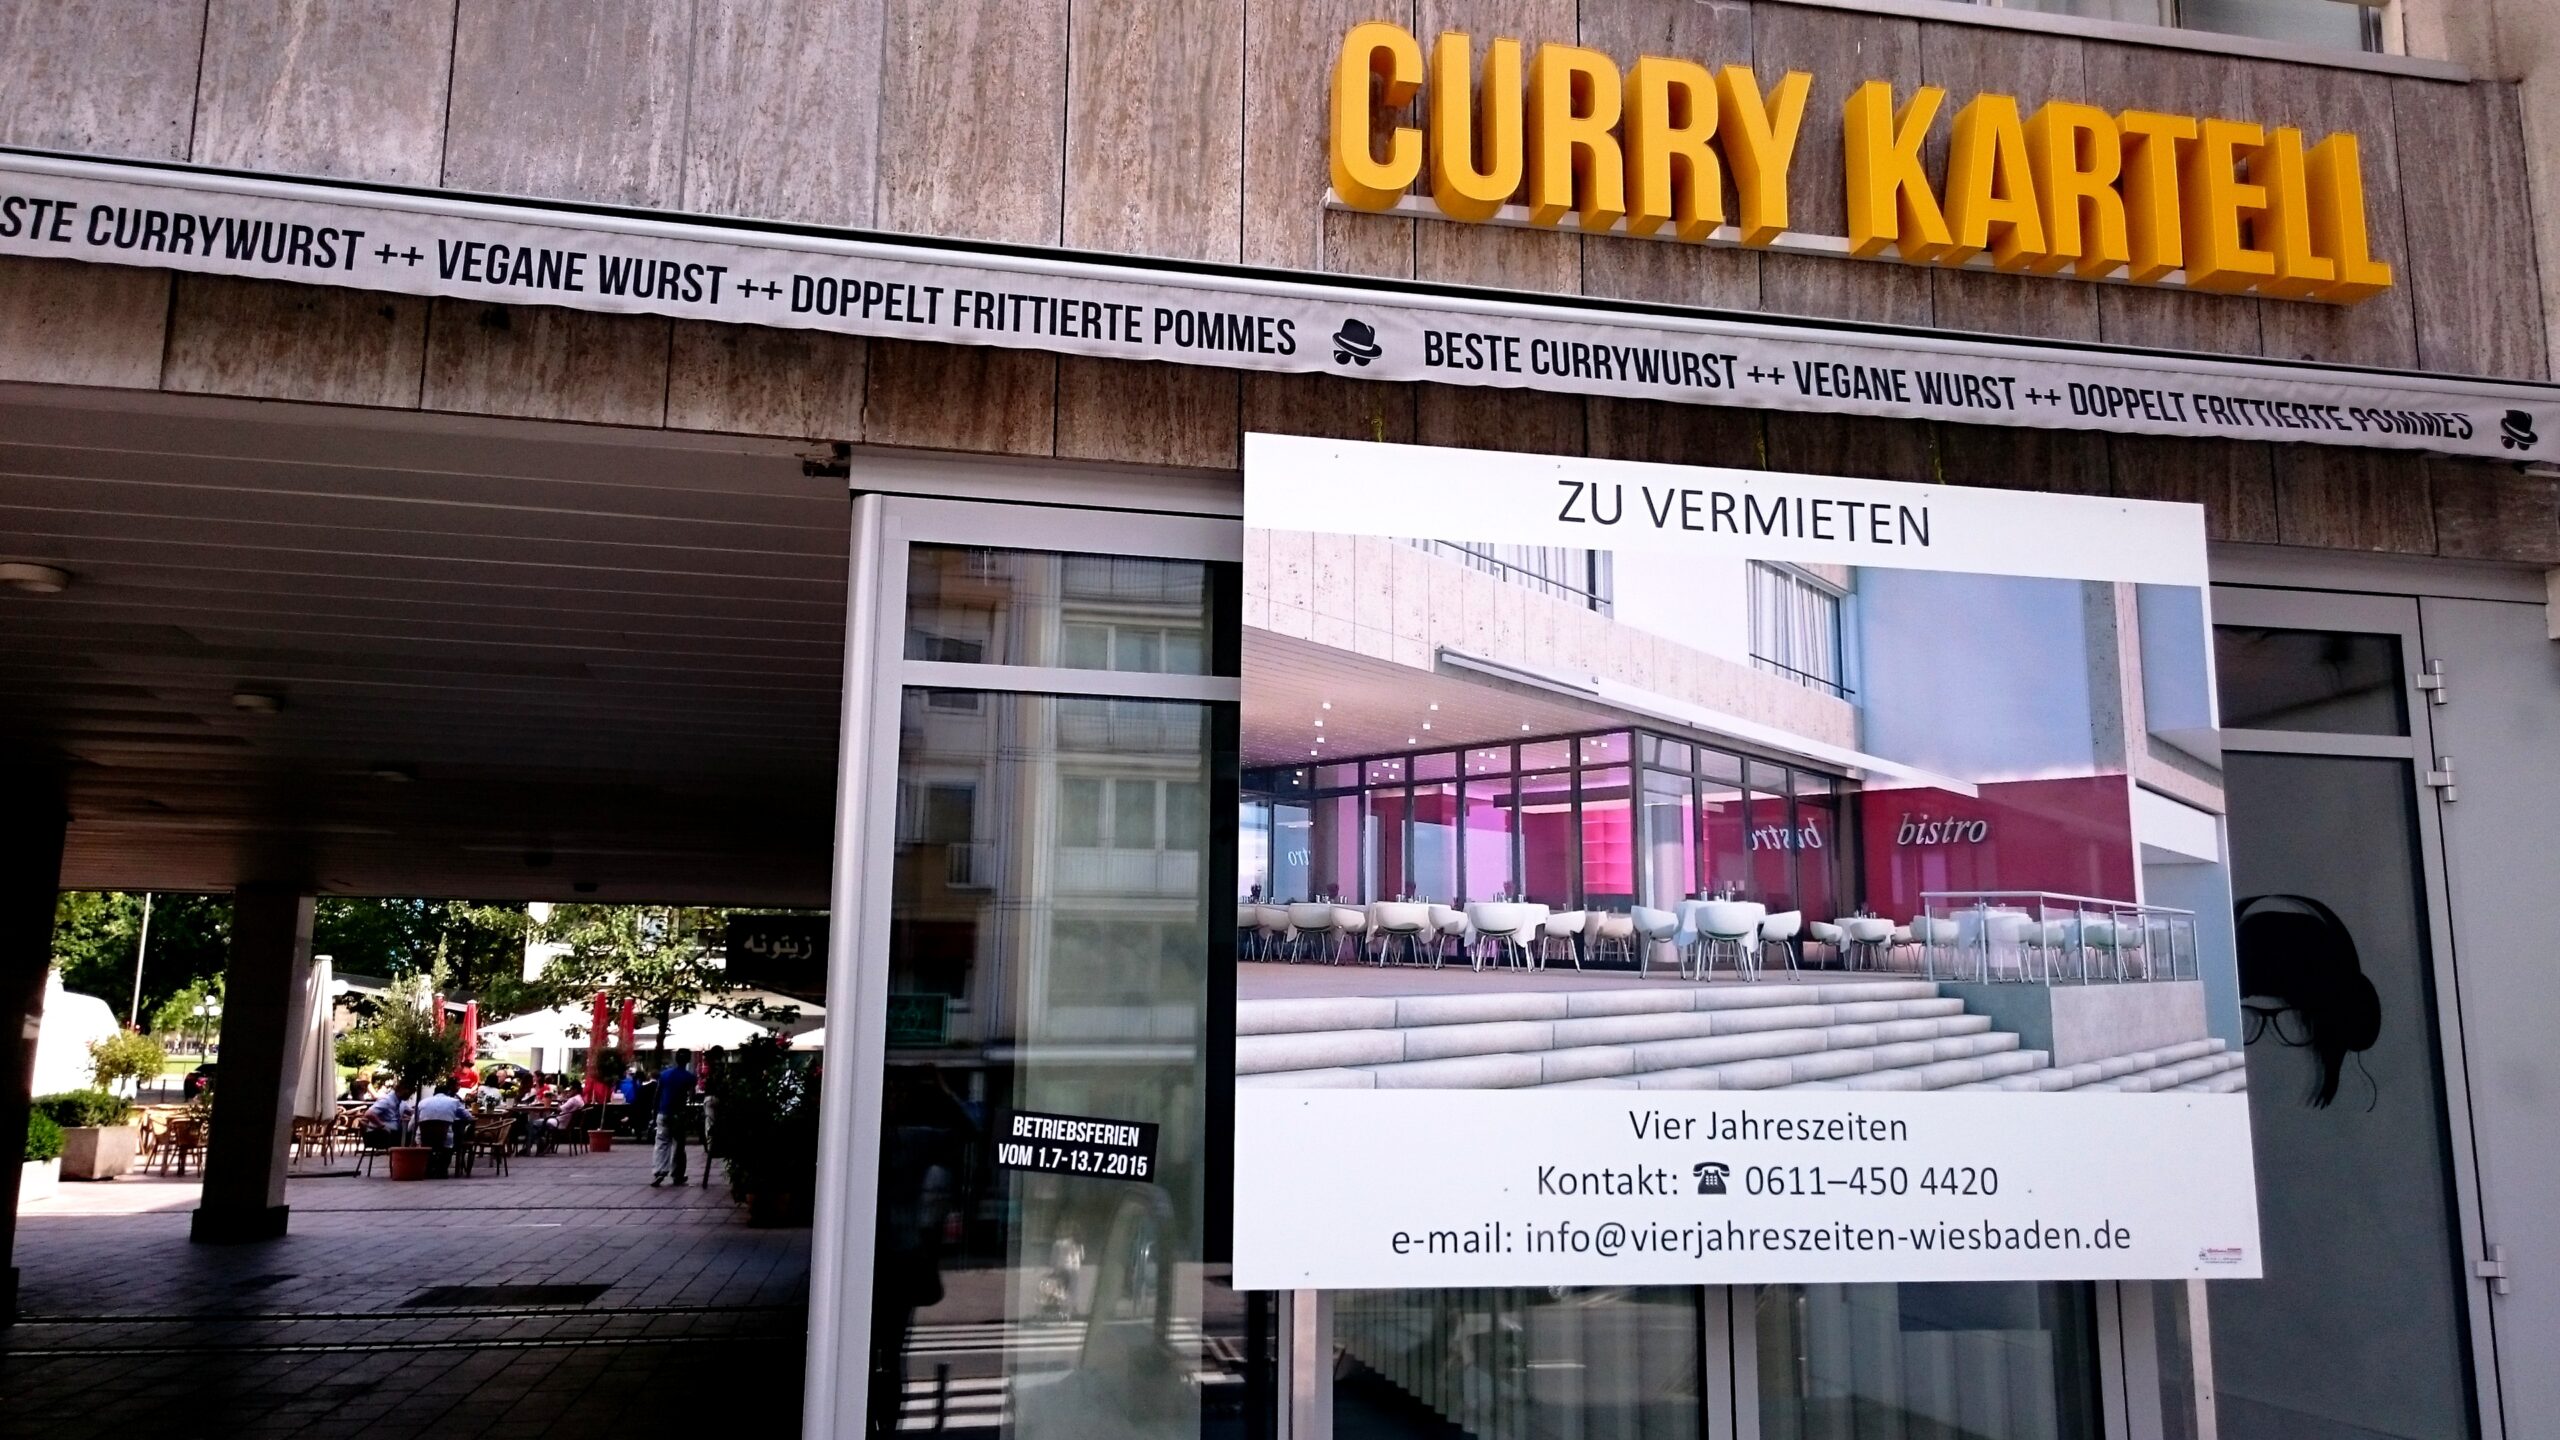 Curry Kartell schließt in Wiesbaden, eröffnet in Mainz